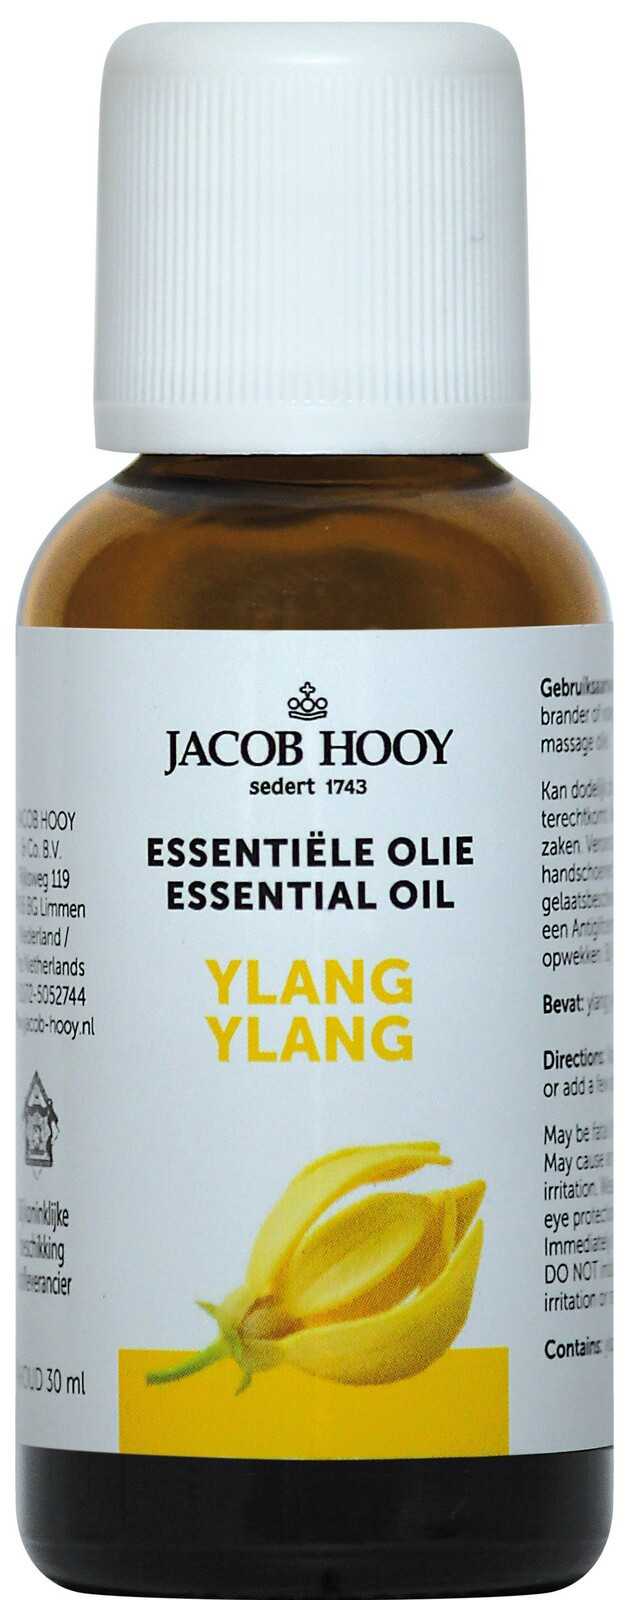 Jacob Hooy Essentiële Olie Ylang Ylang